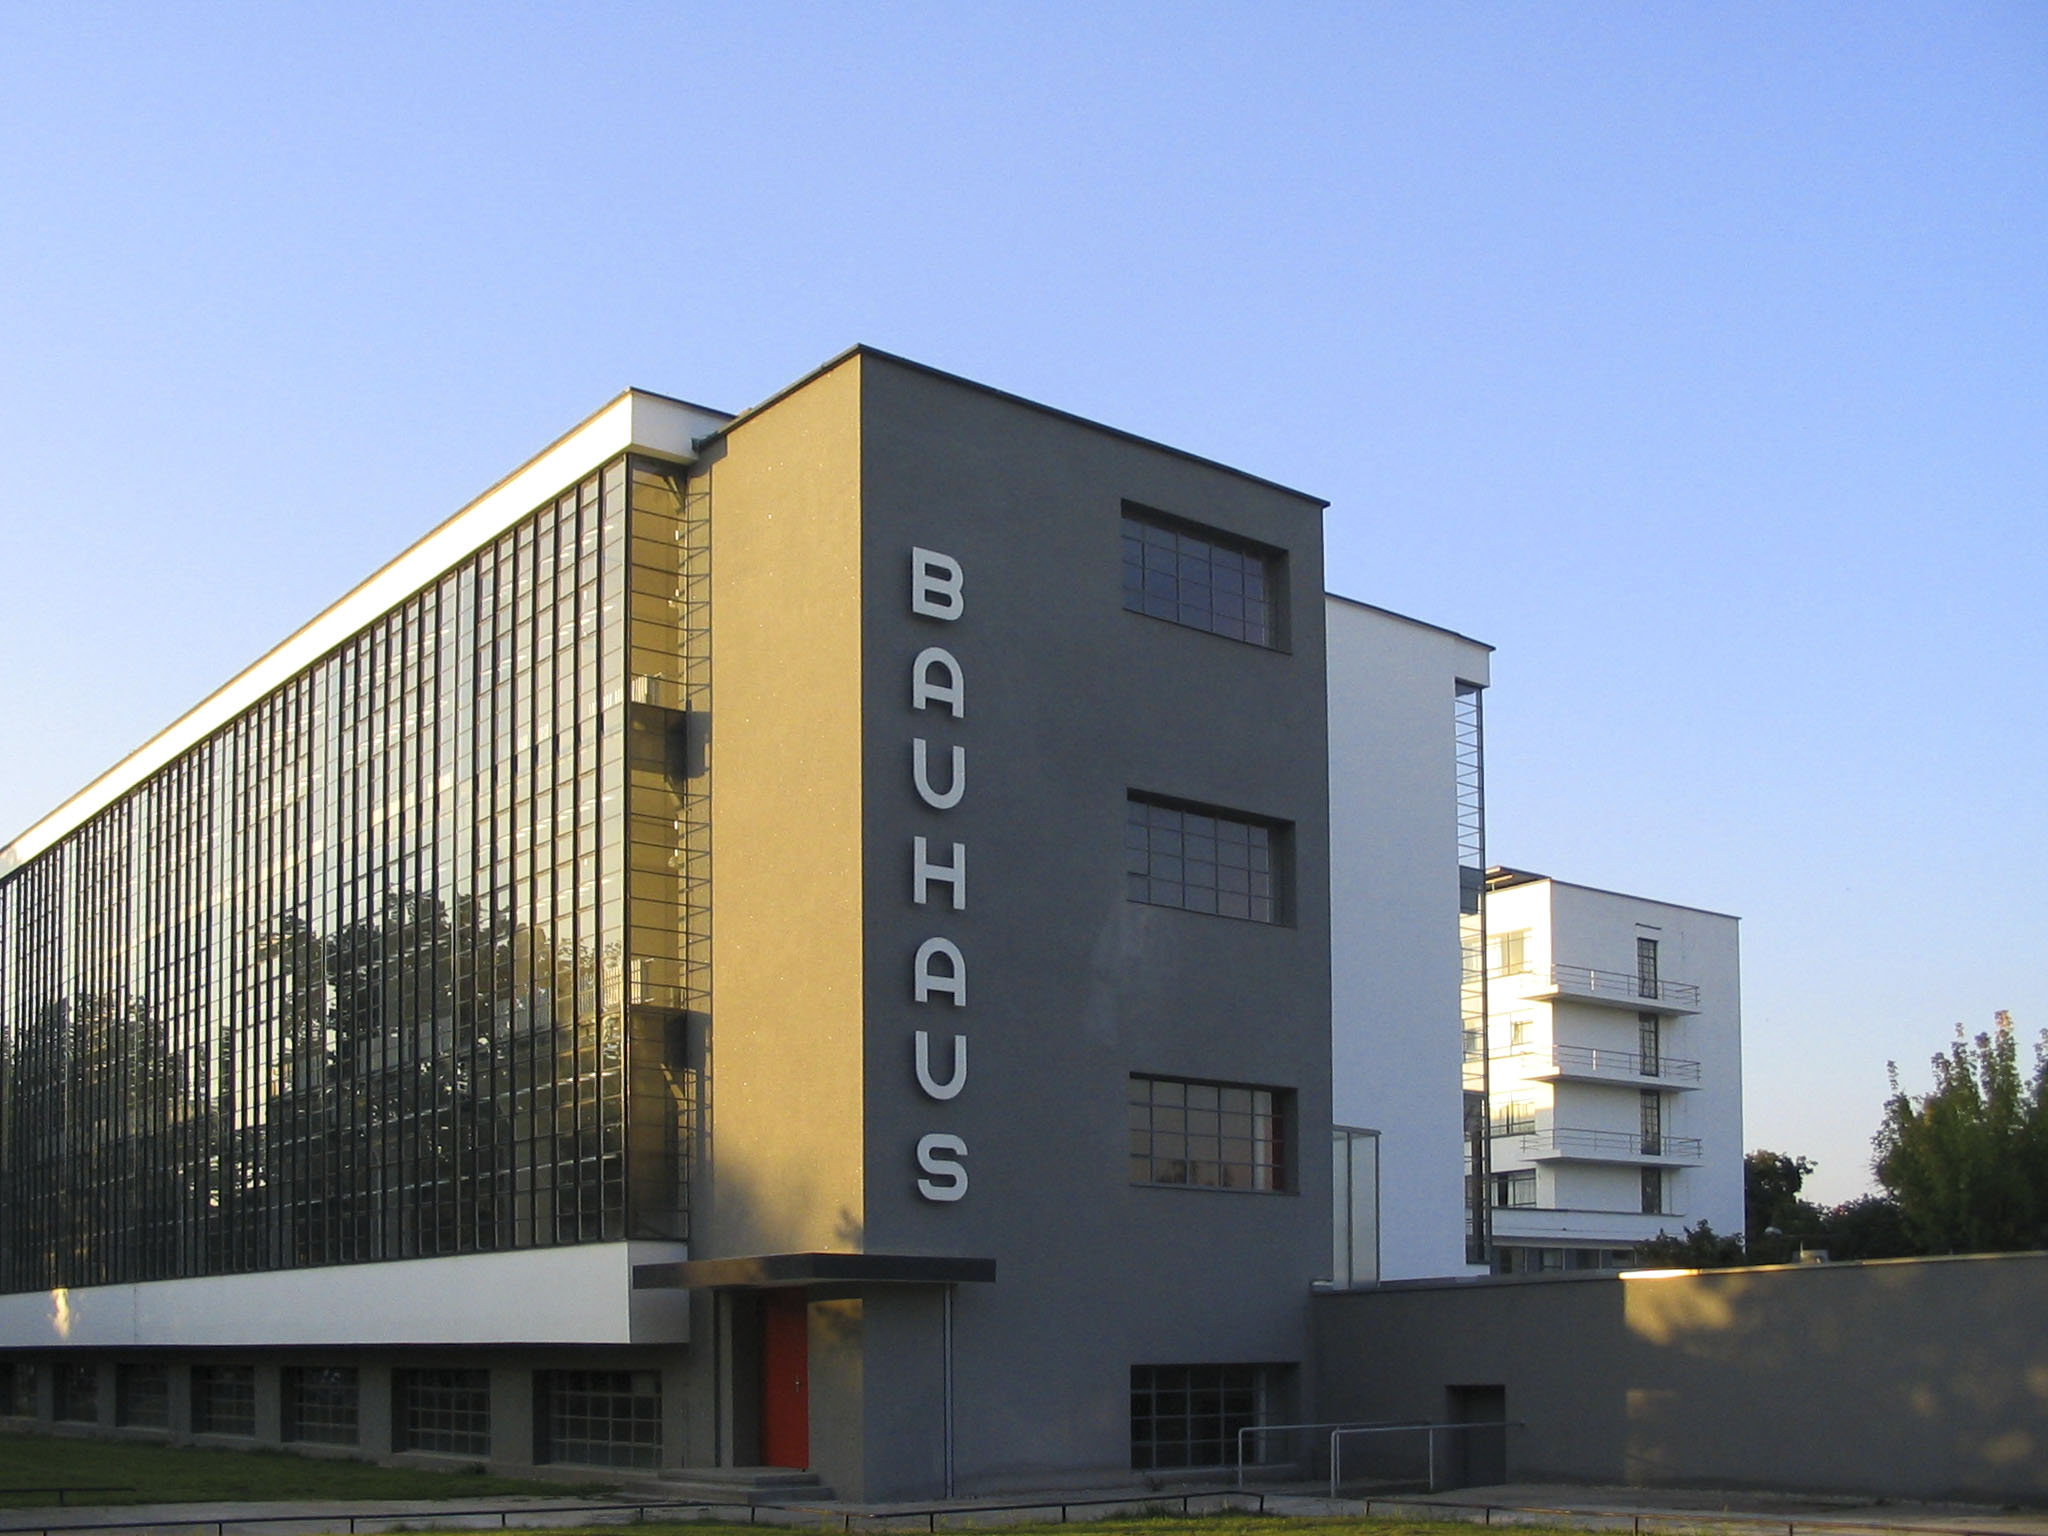 Edificio Bauhaus, estilos arquitectónicos